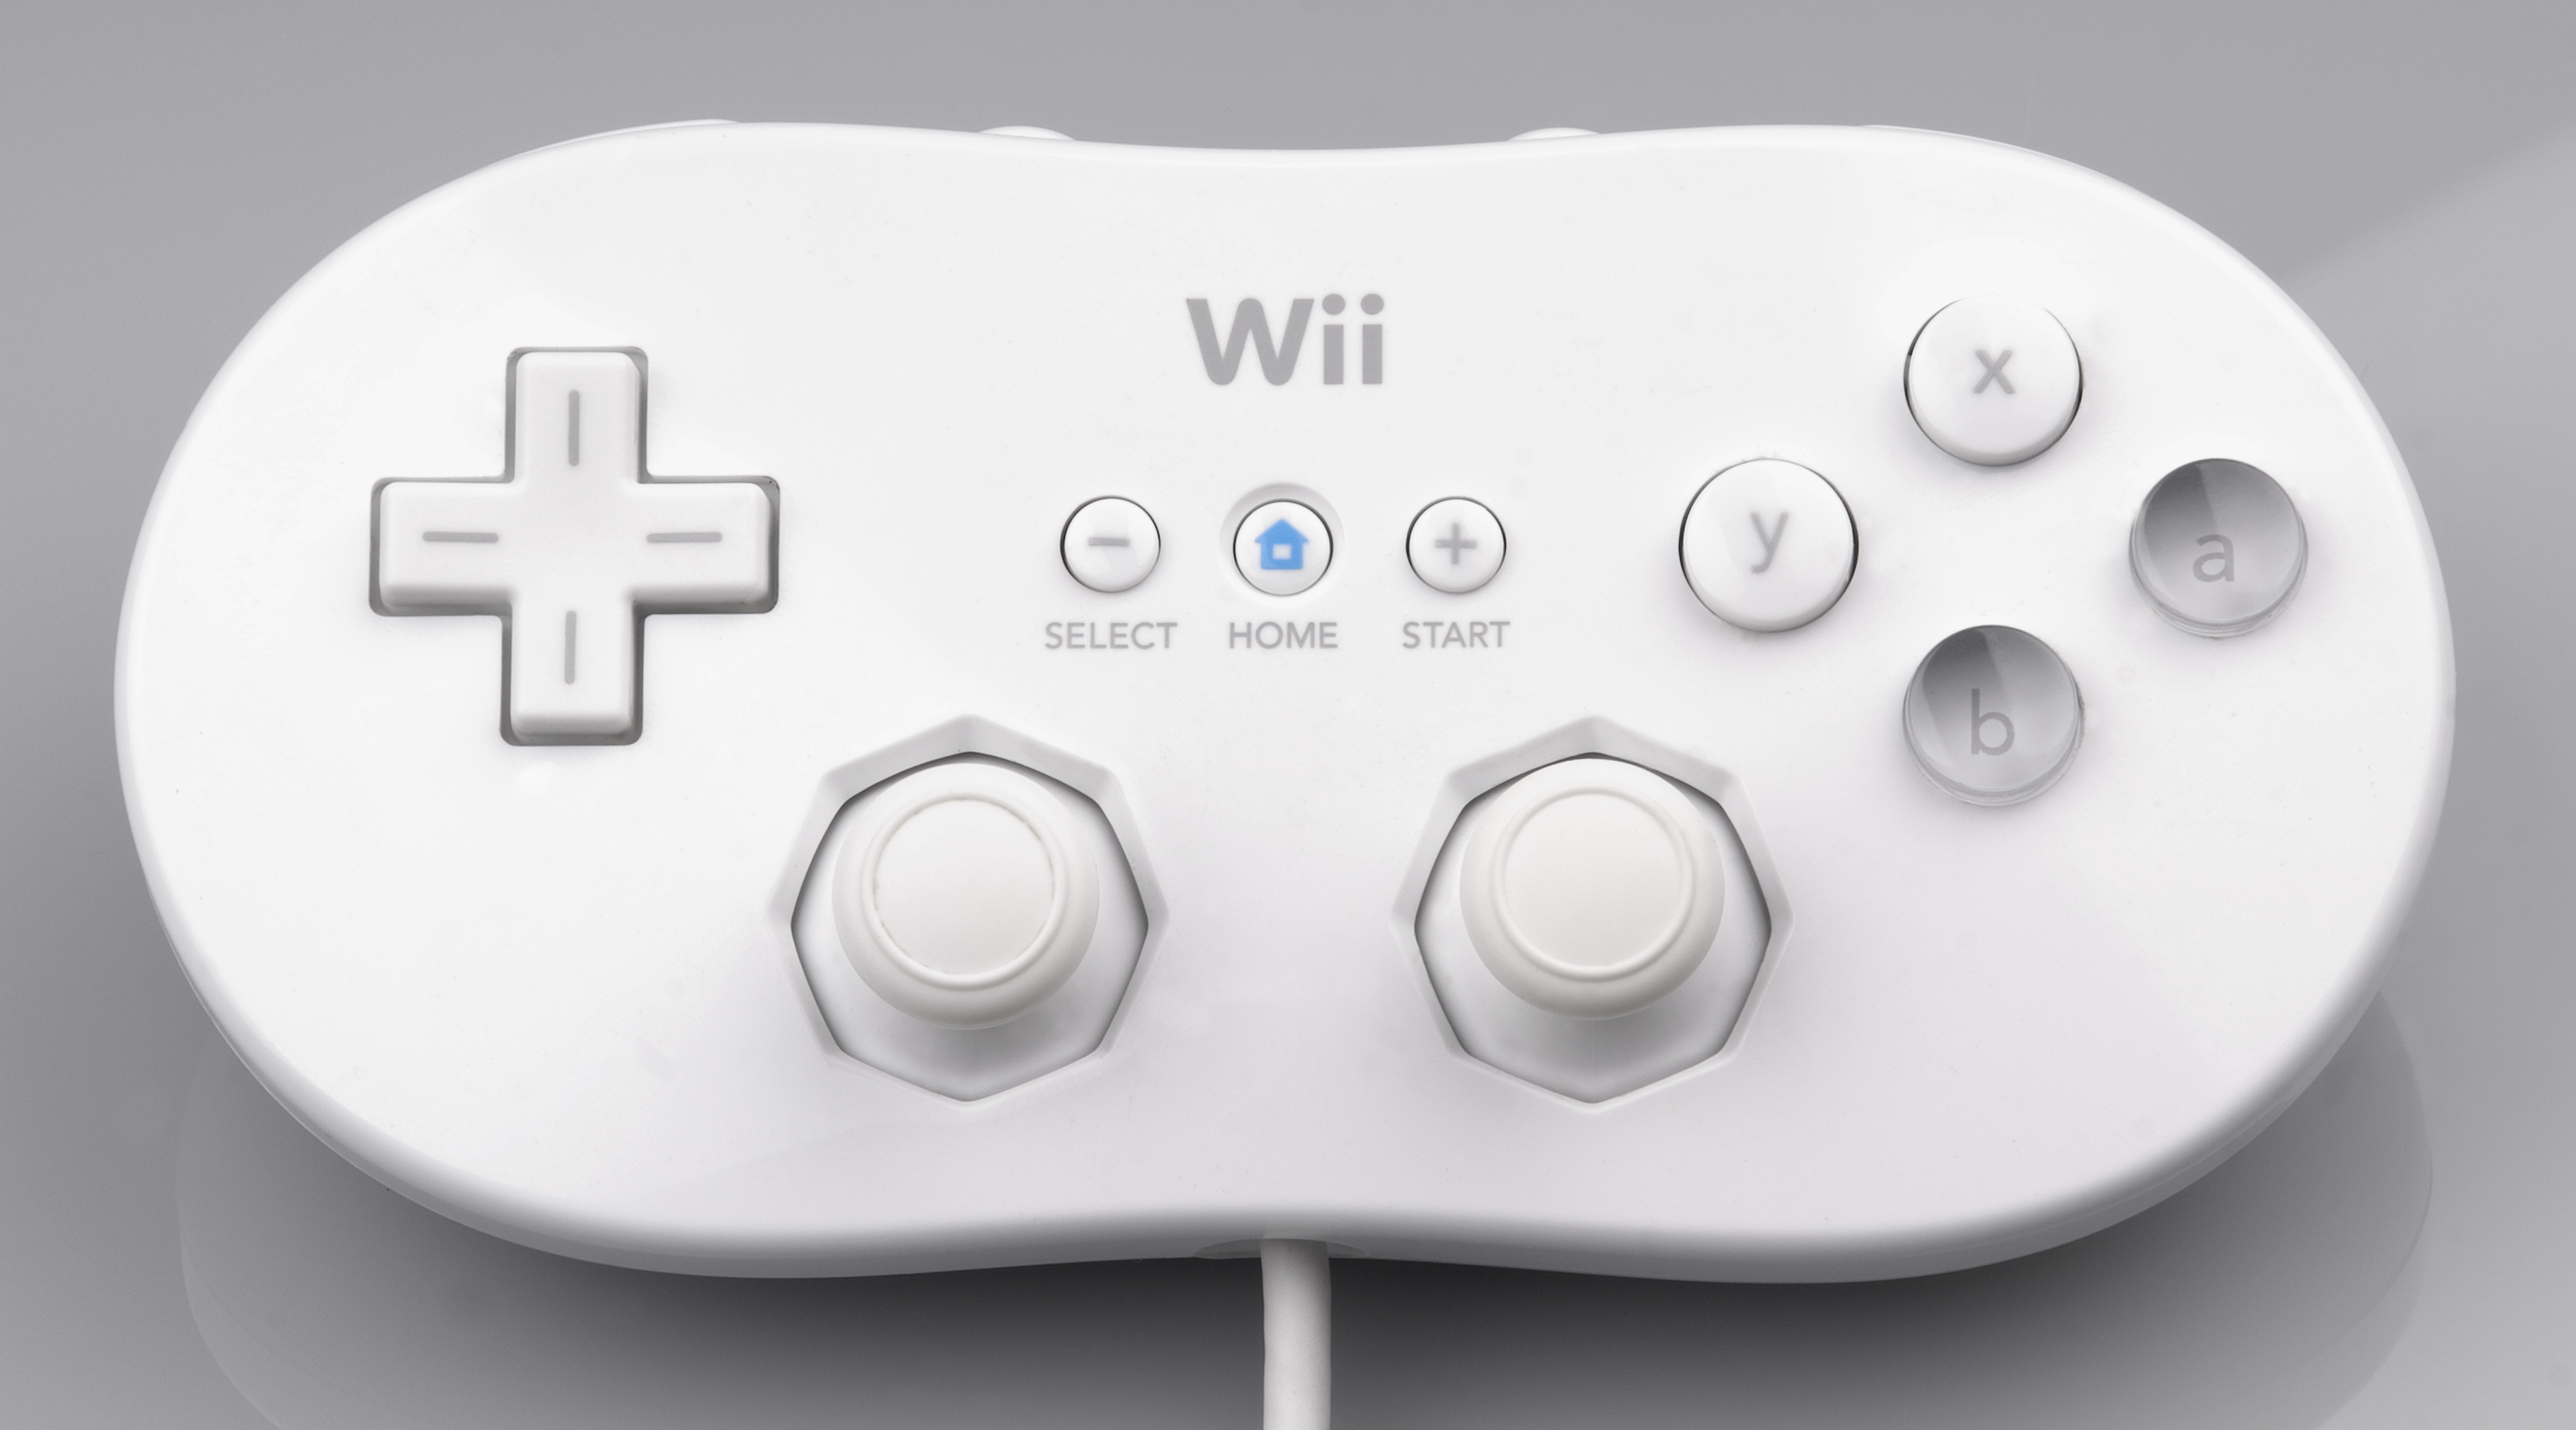 Juegos Nintendo Wii & Wii U: » Nintendo